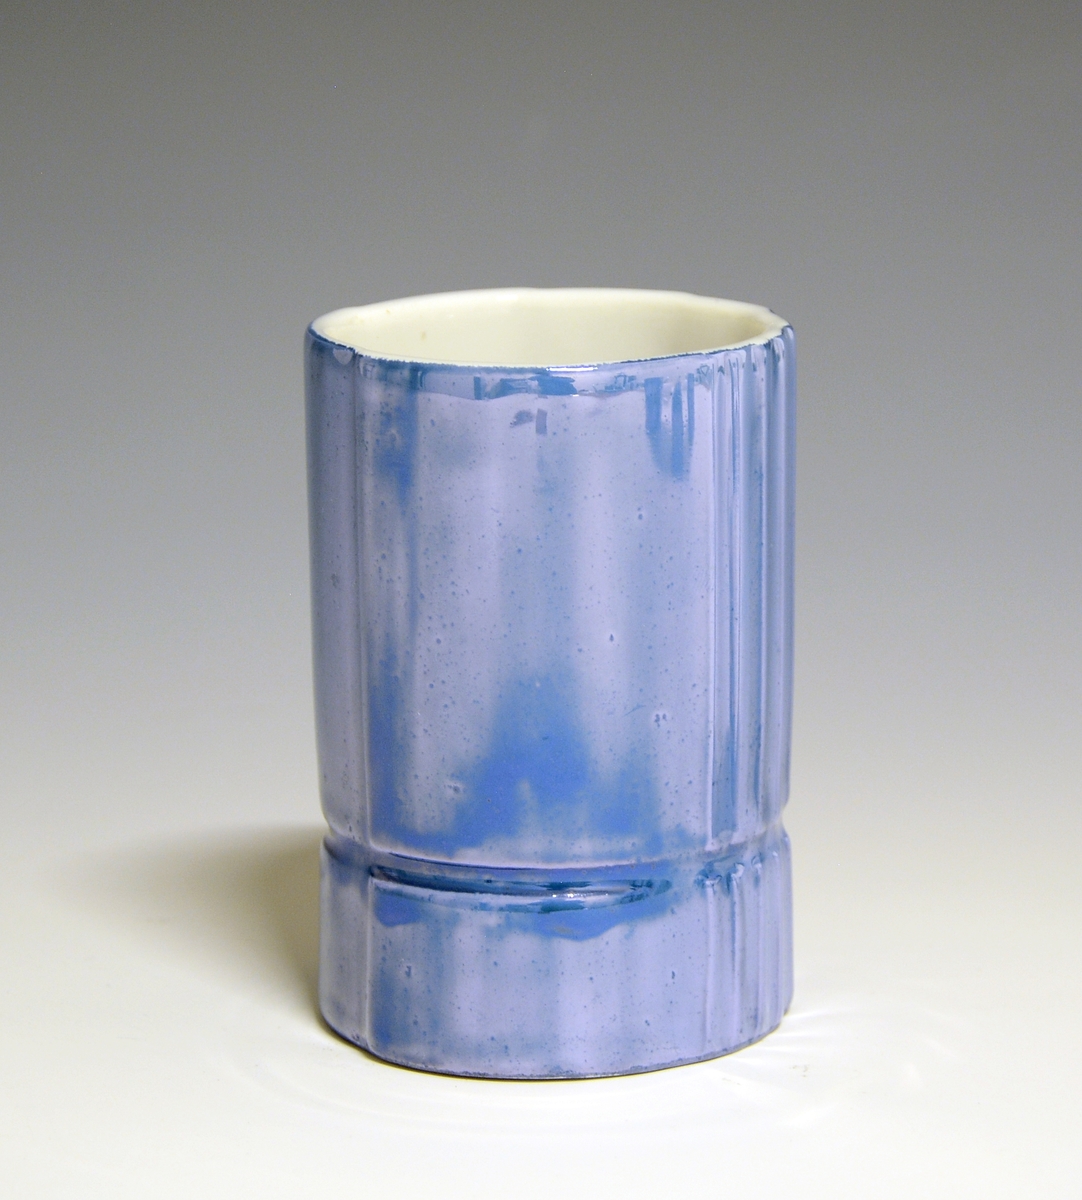 Vase og telysholder av porselen. Fungerer som lysestake den ene veien og vase den andre veien. Sylinderformet med en inntrapping i overgangen mellom vase og telysholder. Hvit glasur. Dekorert med blåfarget heldekkende dekor. 
Design: Grete Rønning.